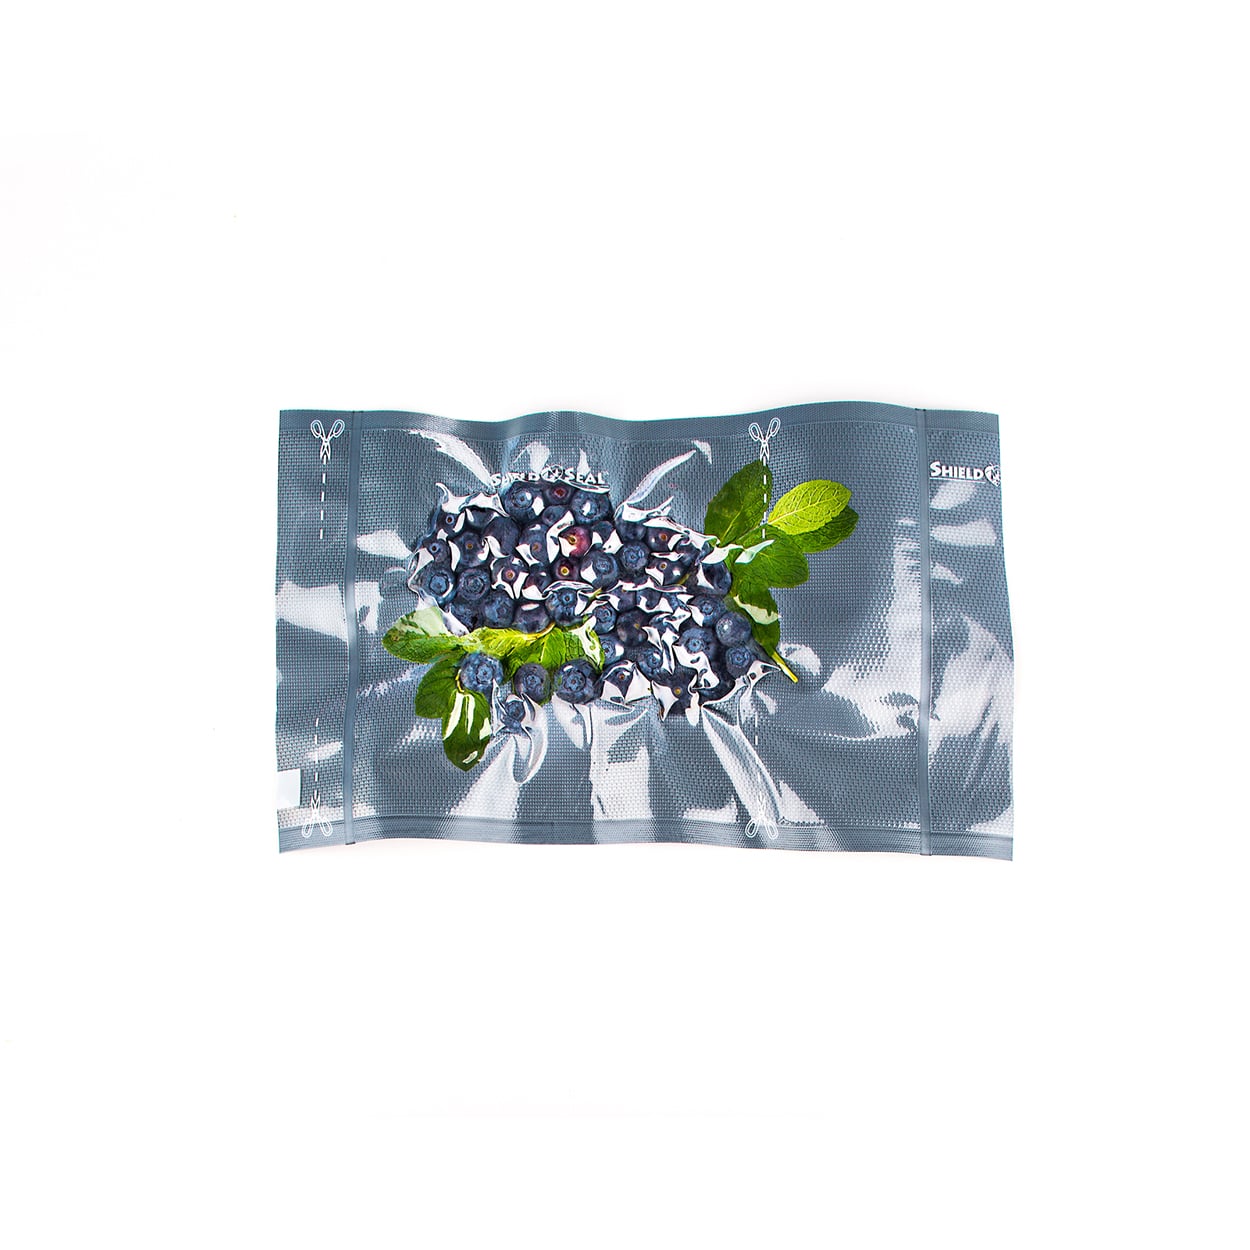 https://shieldnseal.com/wp-content/uploads/2013/09/sns-900-blueberries-a.jpg